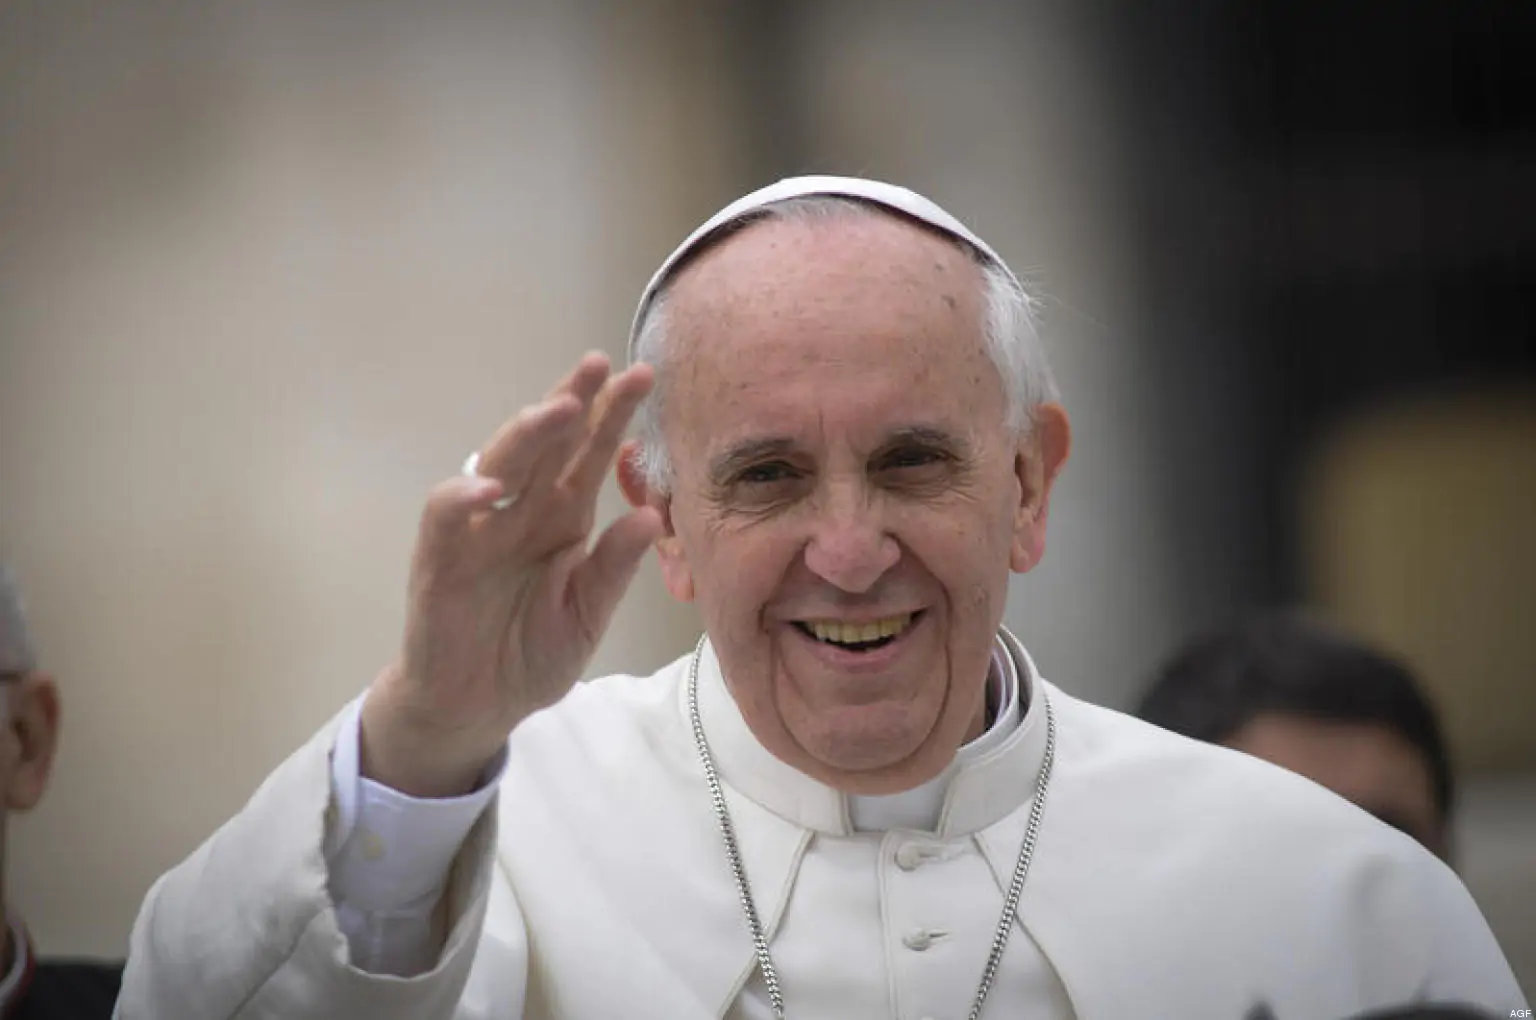 Papa Francesco saluta le migliaia di fedeli che, ogni Domenica, seguono la Messa in Piazza San Pietro a Roma